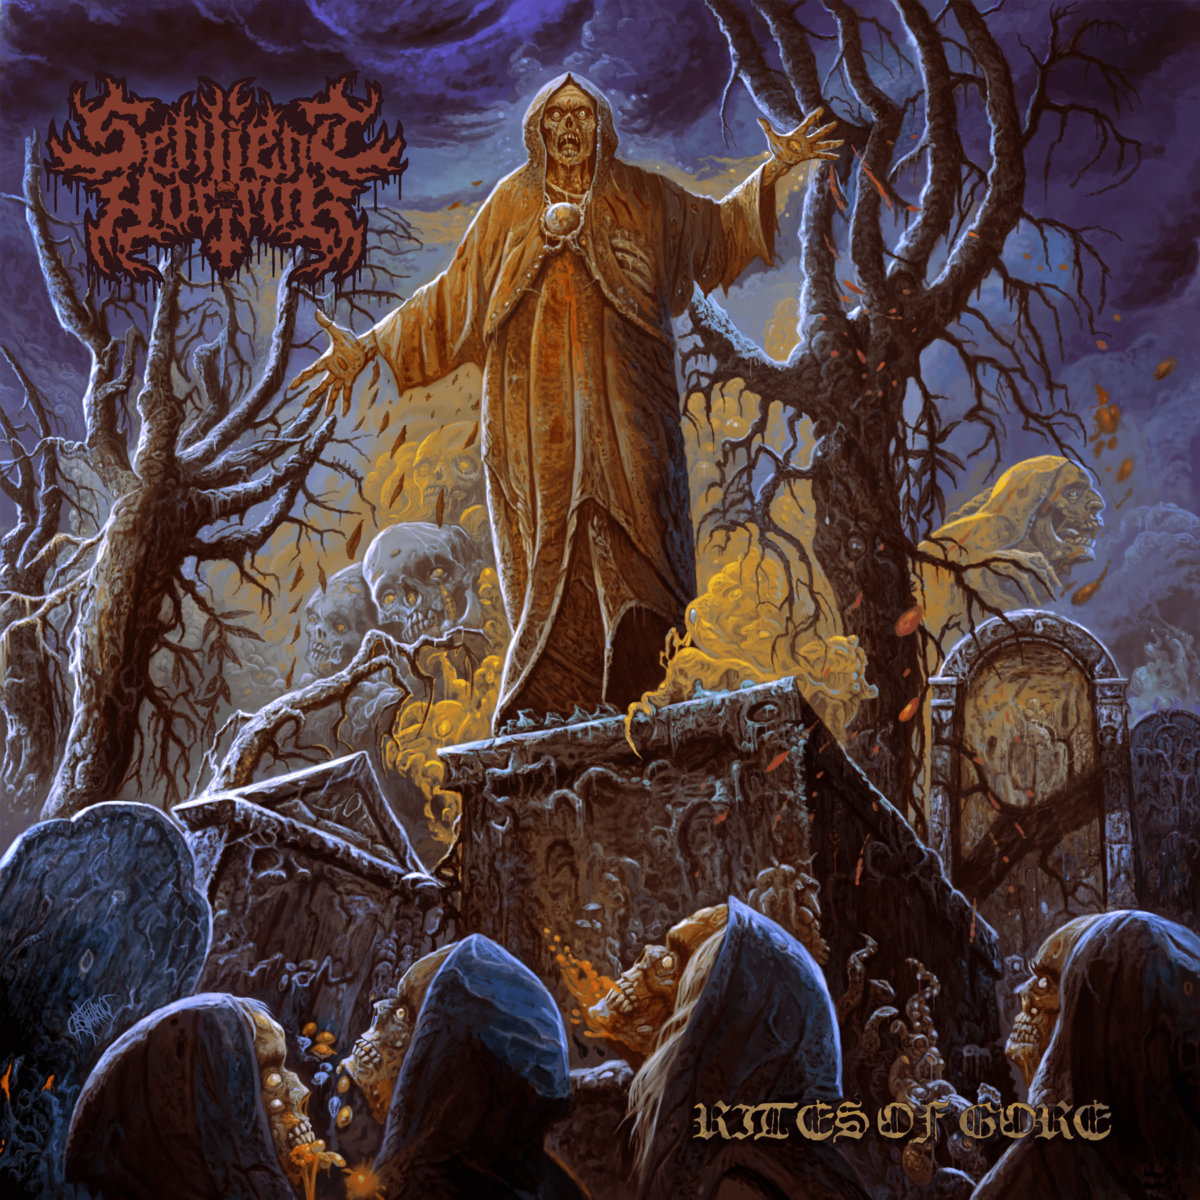 April 22nd, 2022 Sentient Horror released album: Rites of Gore. #deathmetal 🇺🇲 sentienthorror.bandcamp.com/album/rites-of…